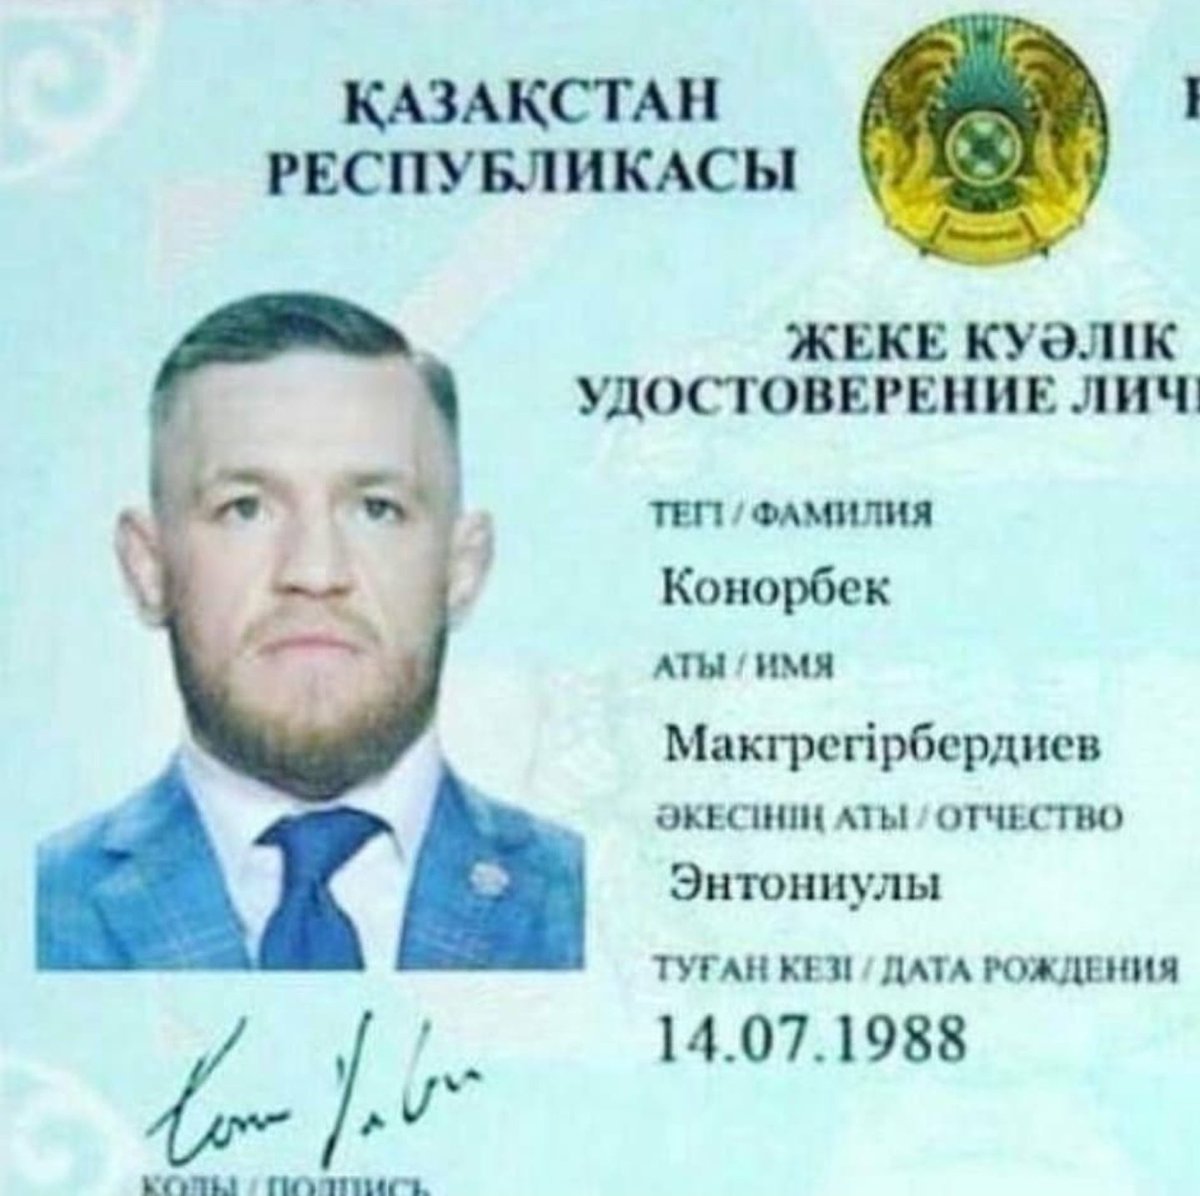 удостоверение личности казахстан с двух сторон